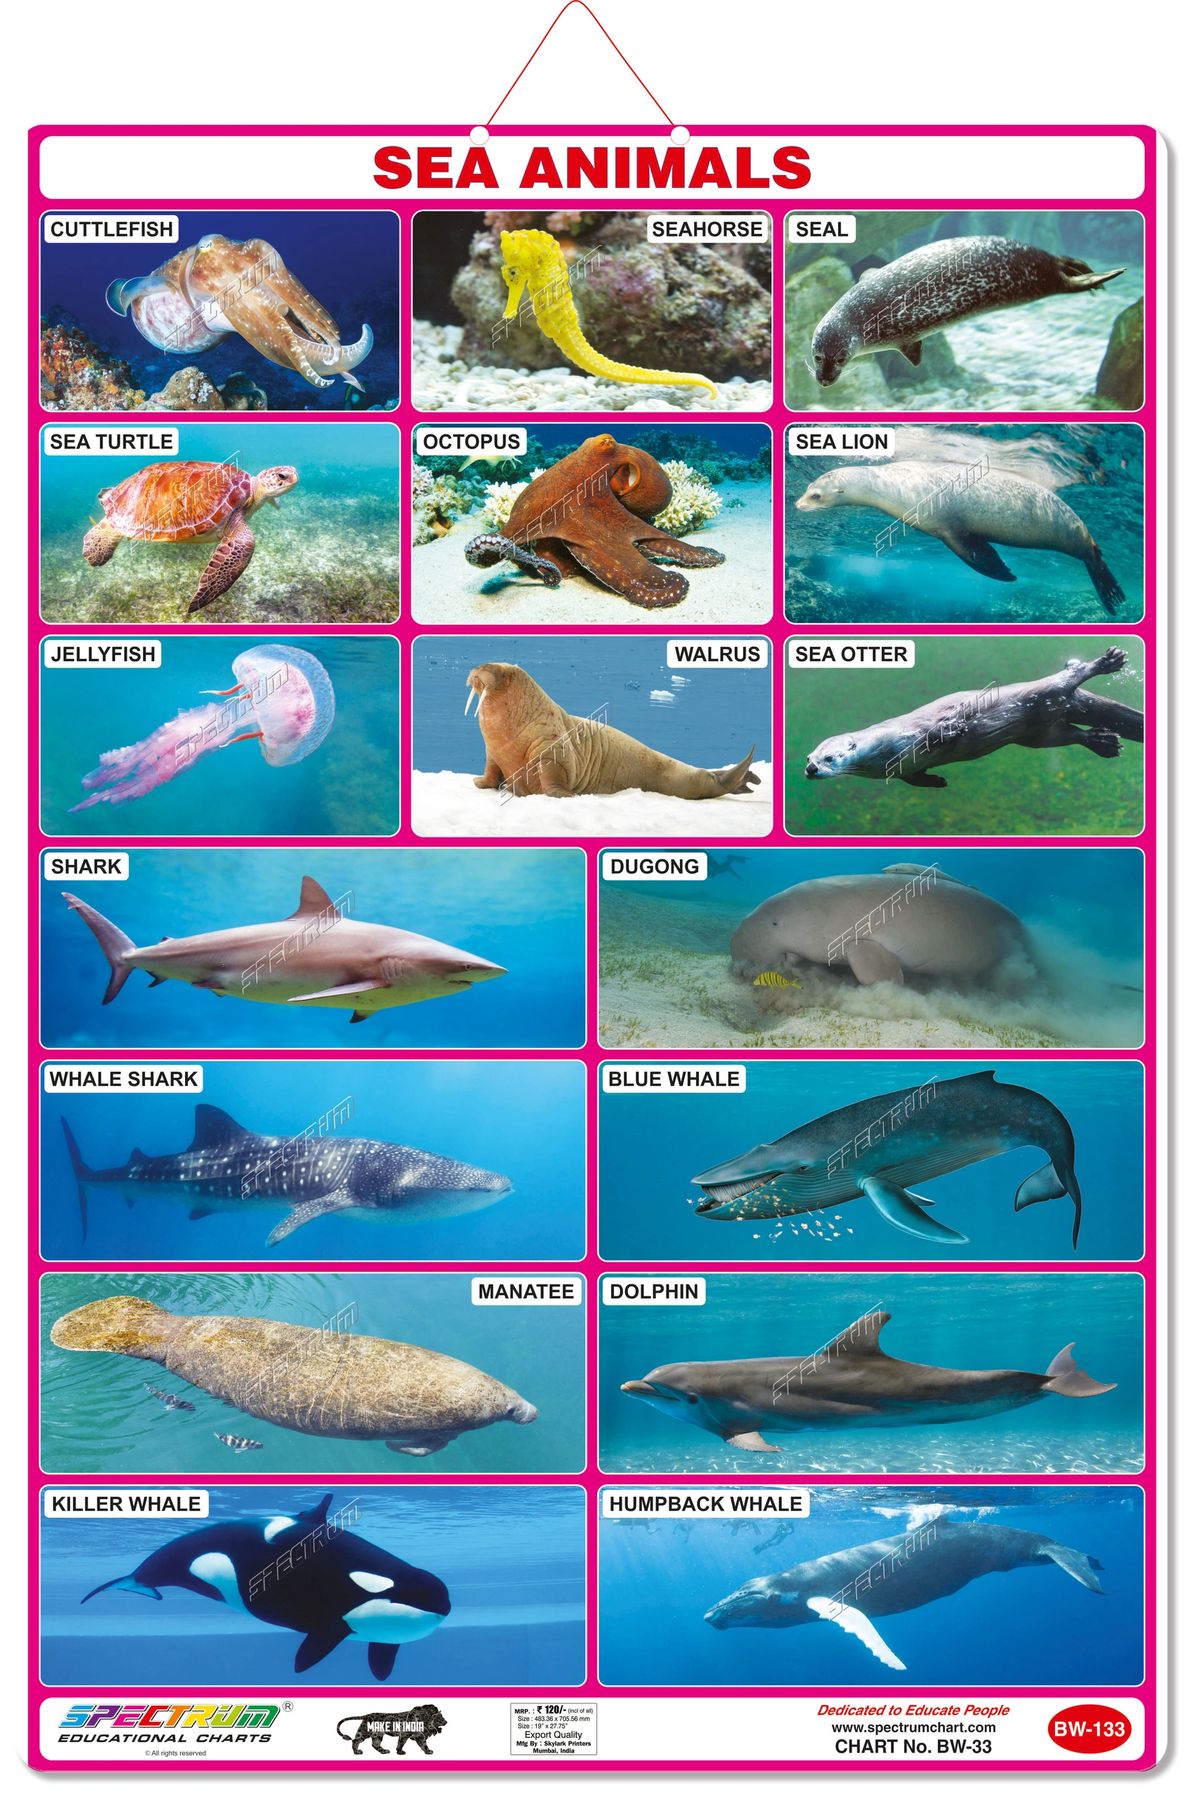 aquatic animals chart